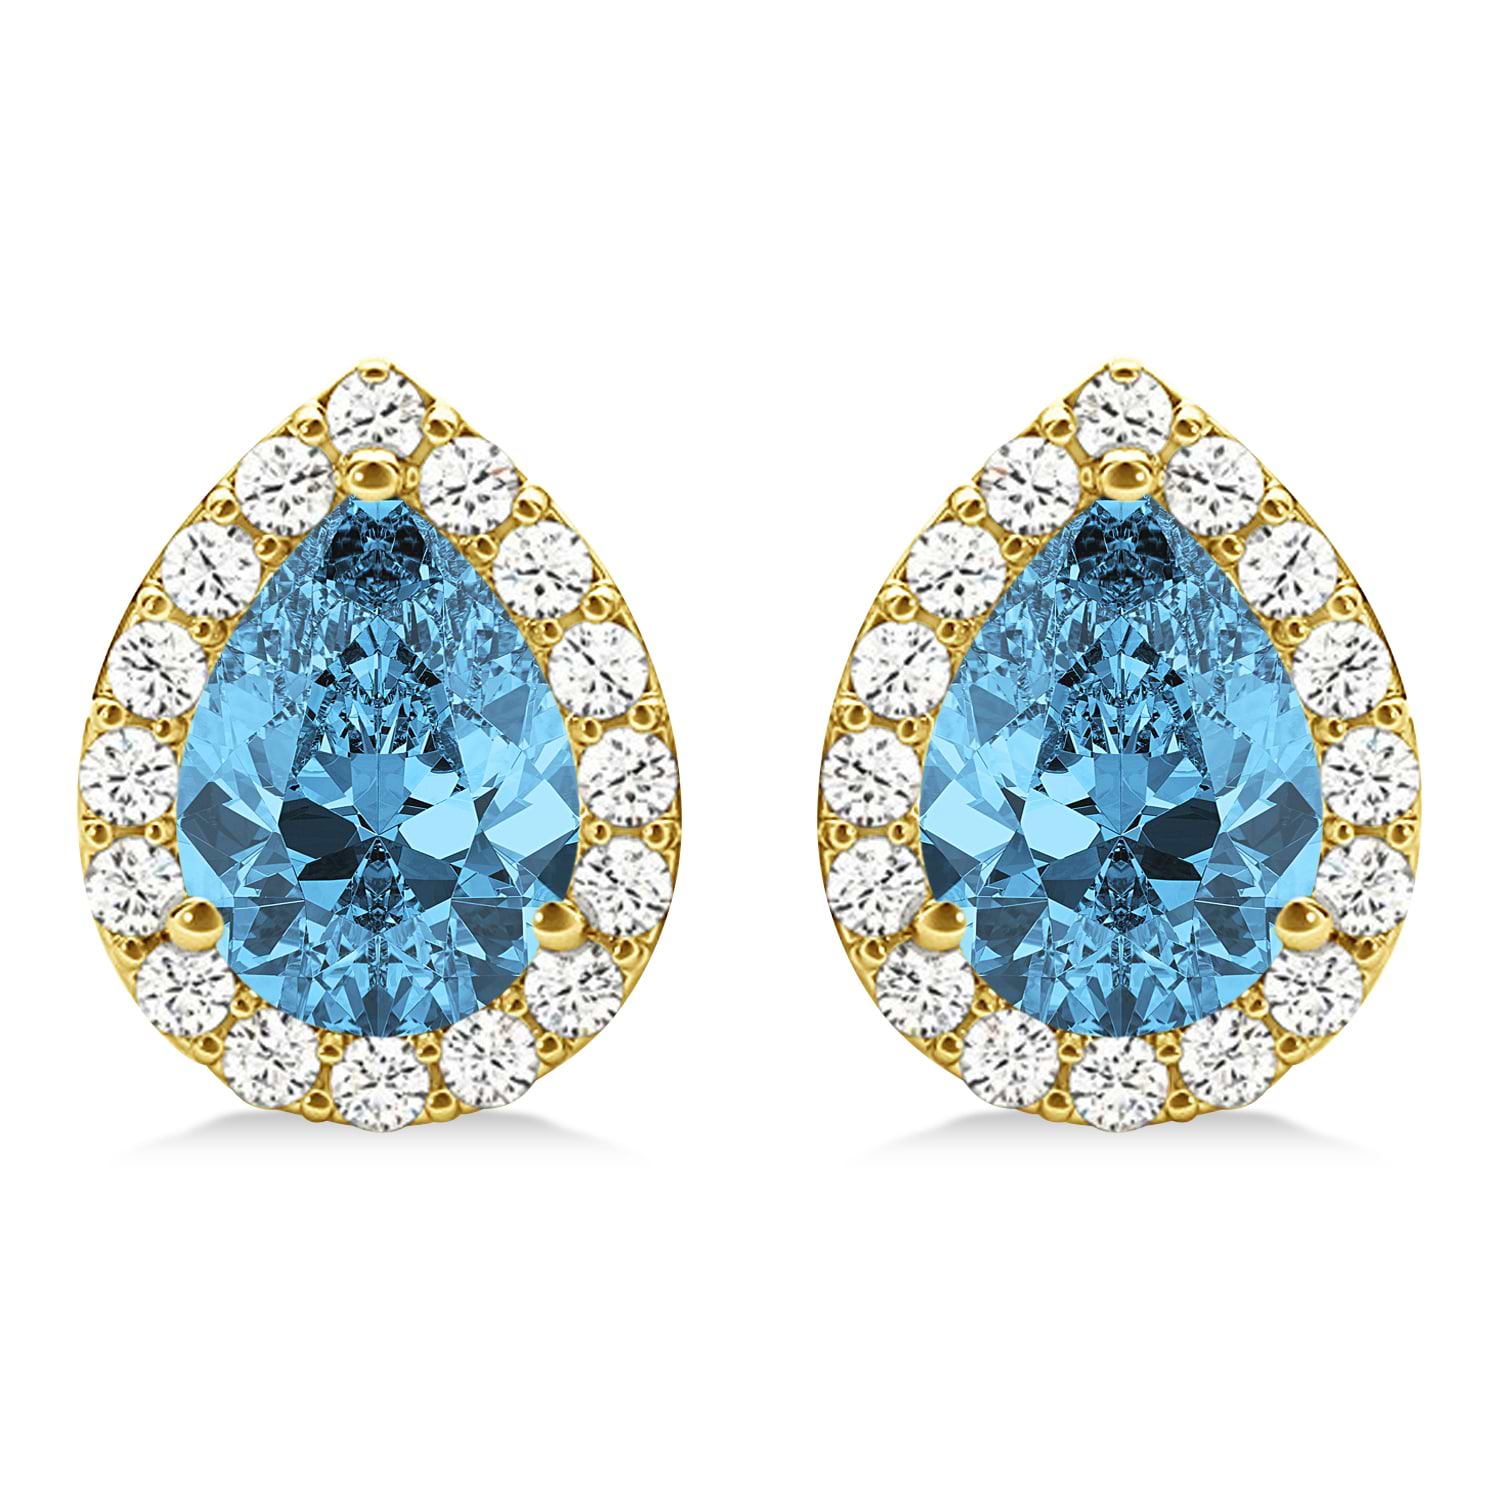 Teardrop Blue Topaz & Diamond Halo Earrings 14k Yellow Gold (2.24ct)